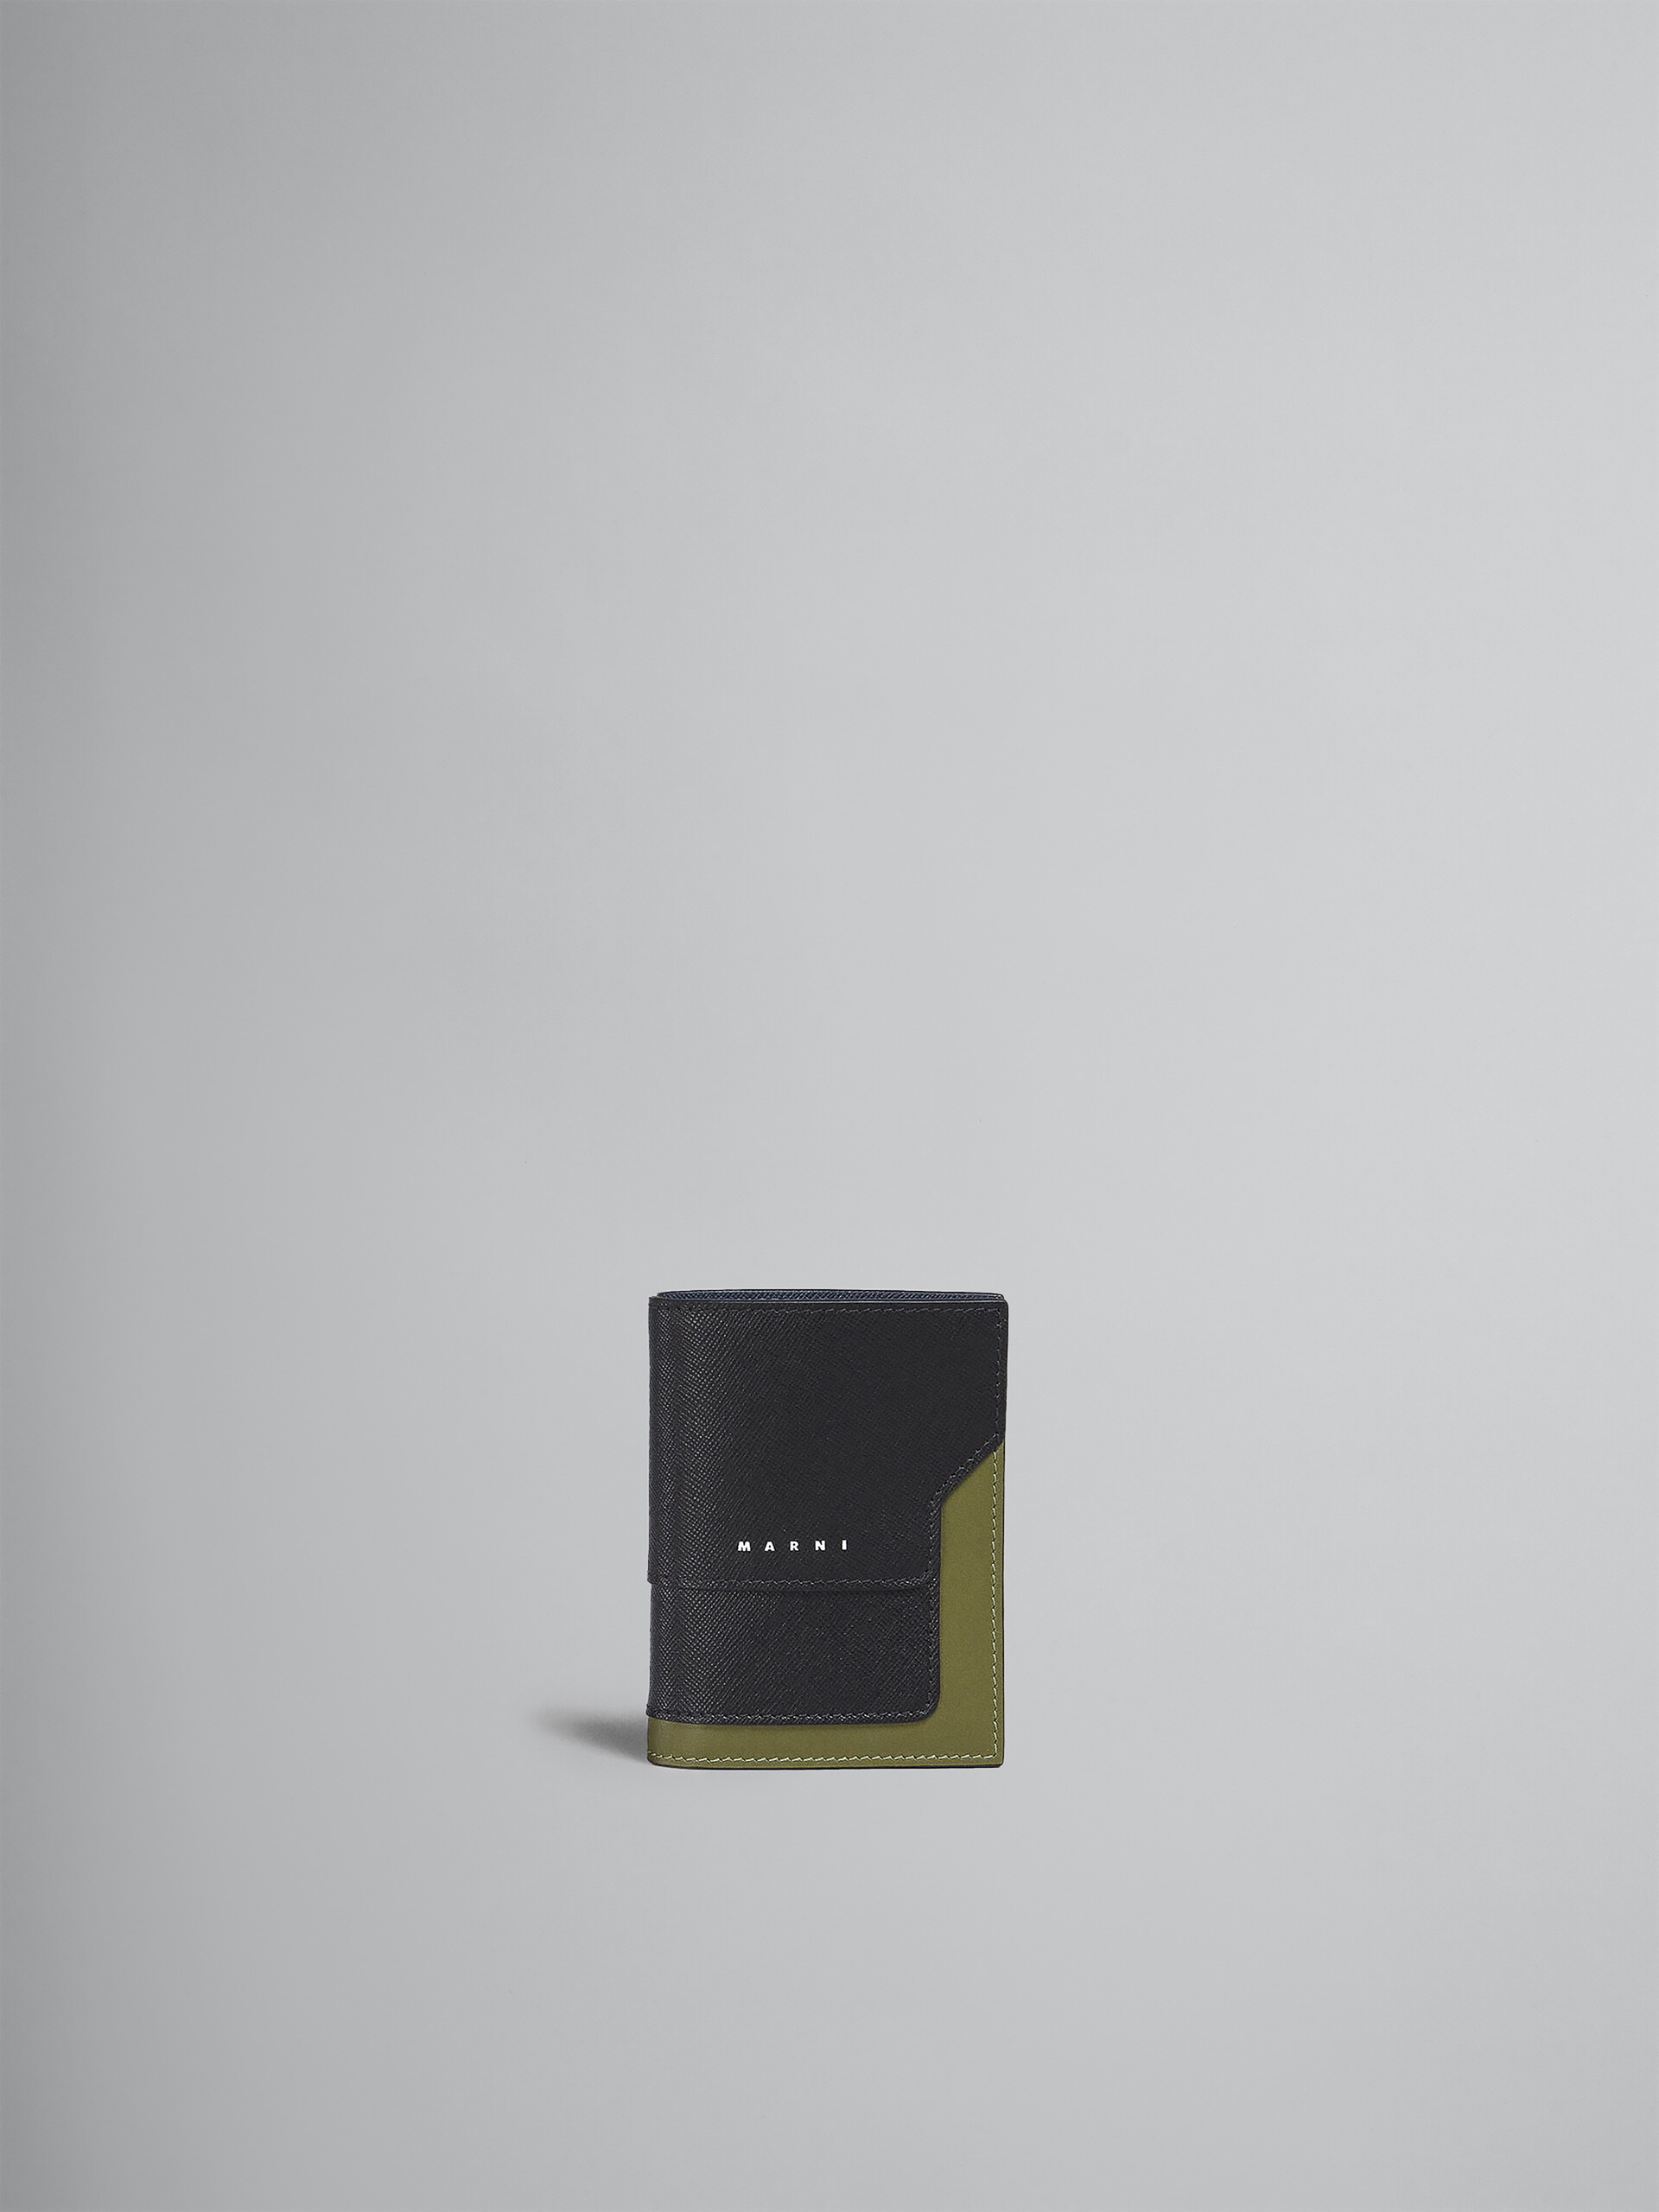 Portafoglio bi-fold in saffiano nero verde e blu - Portafogli - Image 1